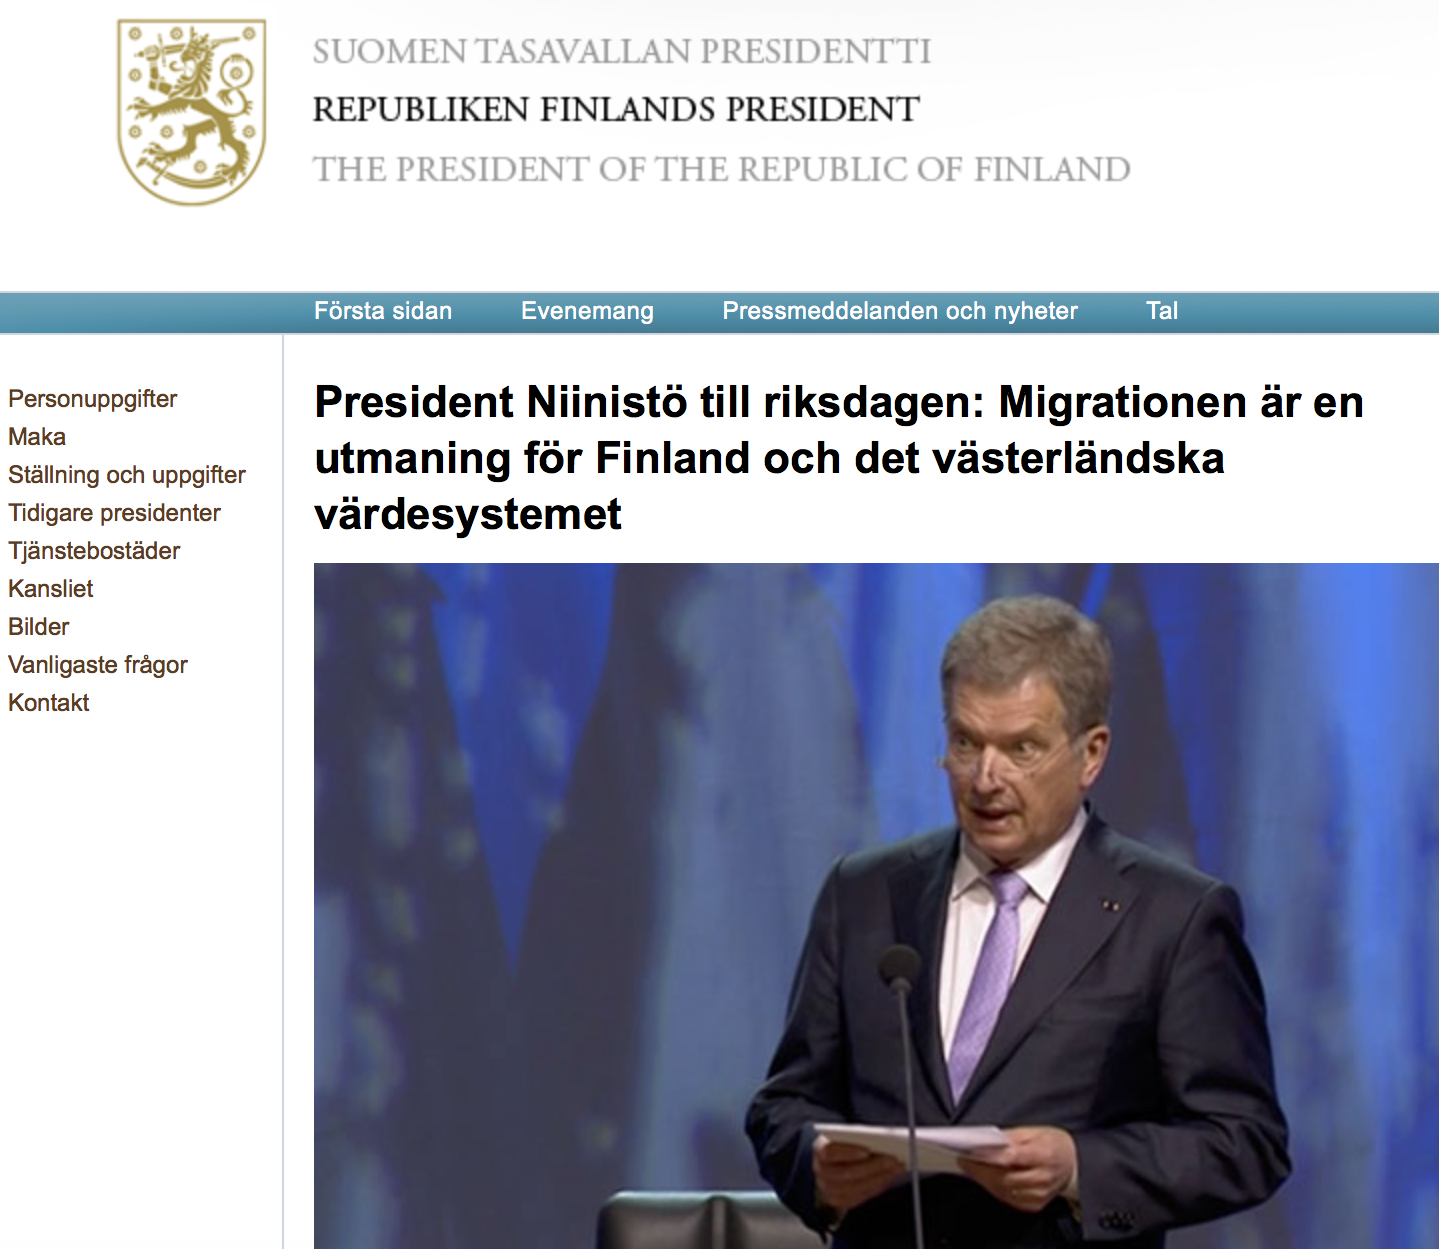 Finland. President Sauli Niinistö: ”Strömmen av immigranter till Europa, och även till Finland, är i hög grad en folkvandring; det handlar alltså inte om flykt undan omedelbar nöd.”